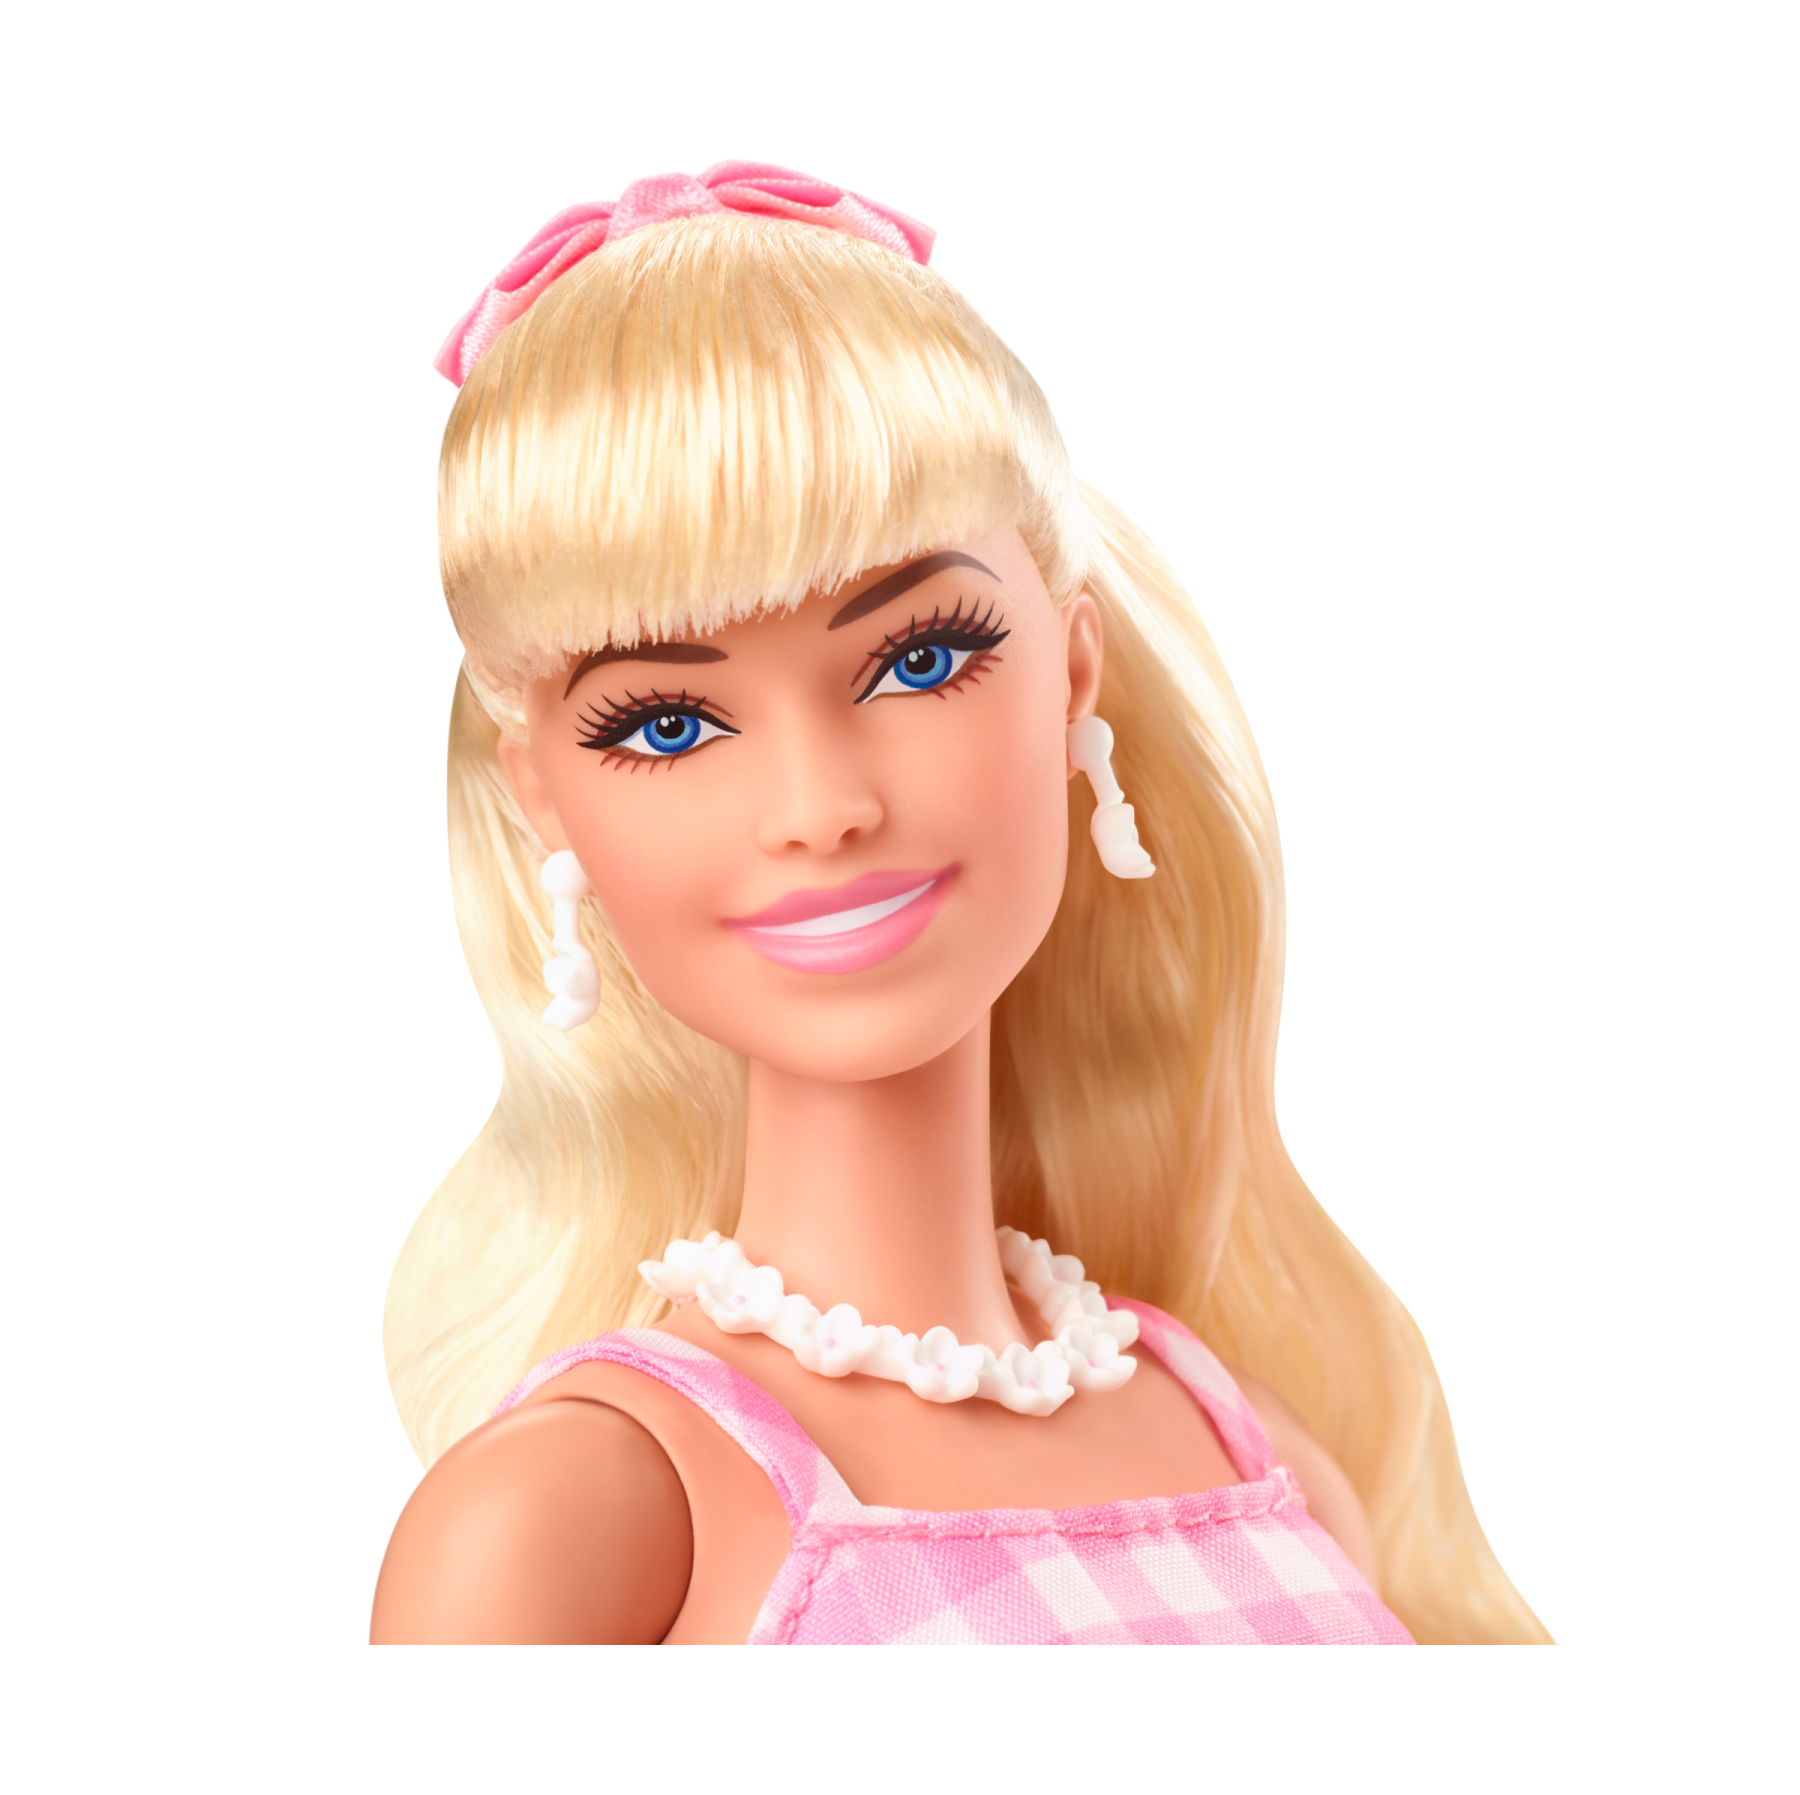 Barbie the movie - margot robbie, bambola del film barbie da collezione con abito vintage a quadretti rosa e bianco e collana con margherita, 3+ anni, hpj96 - Barbie